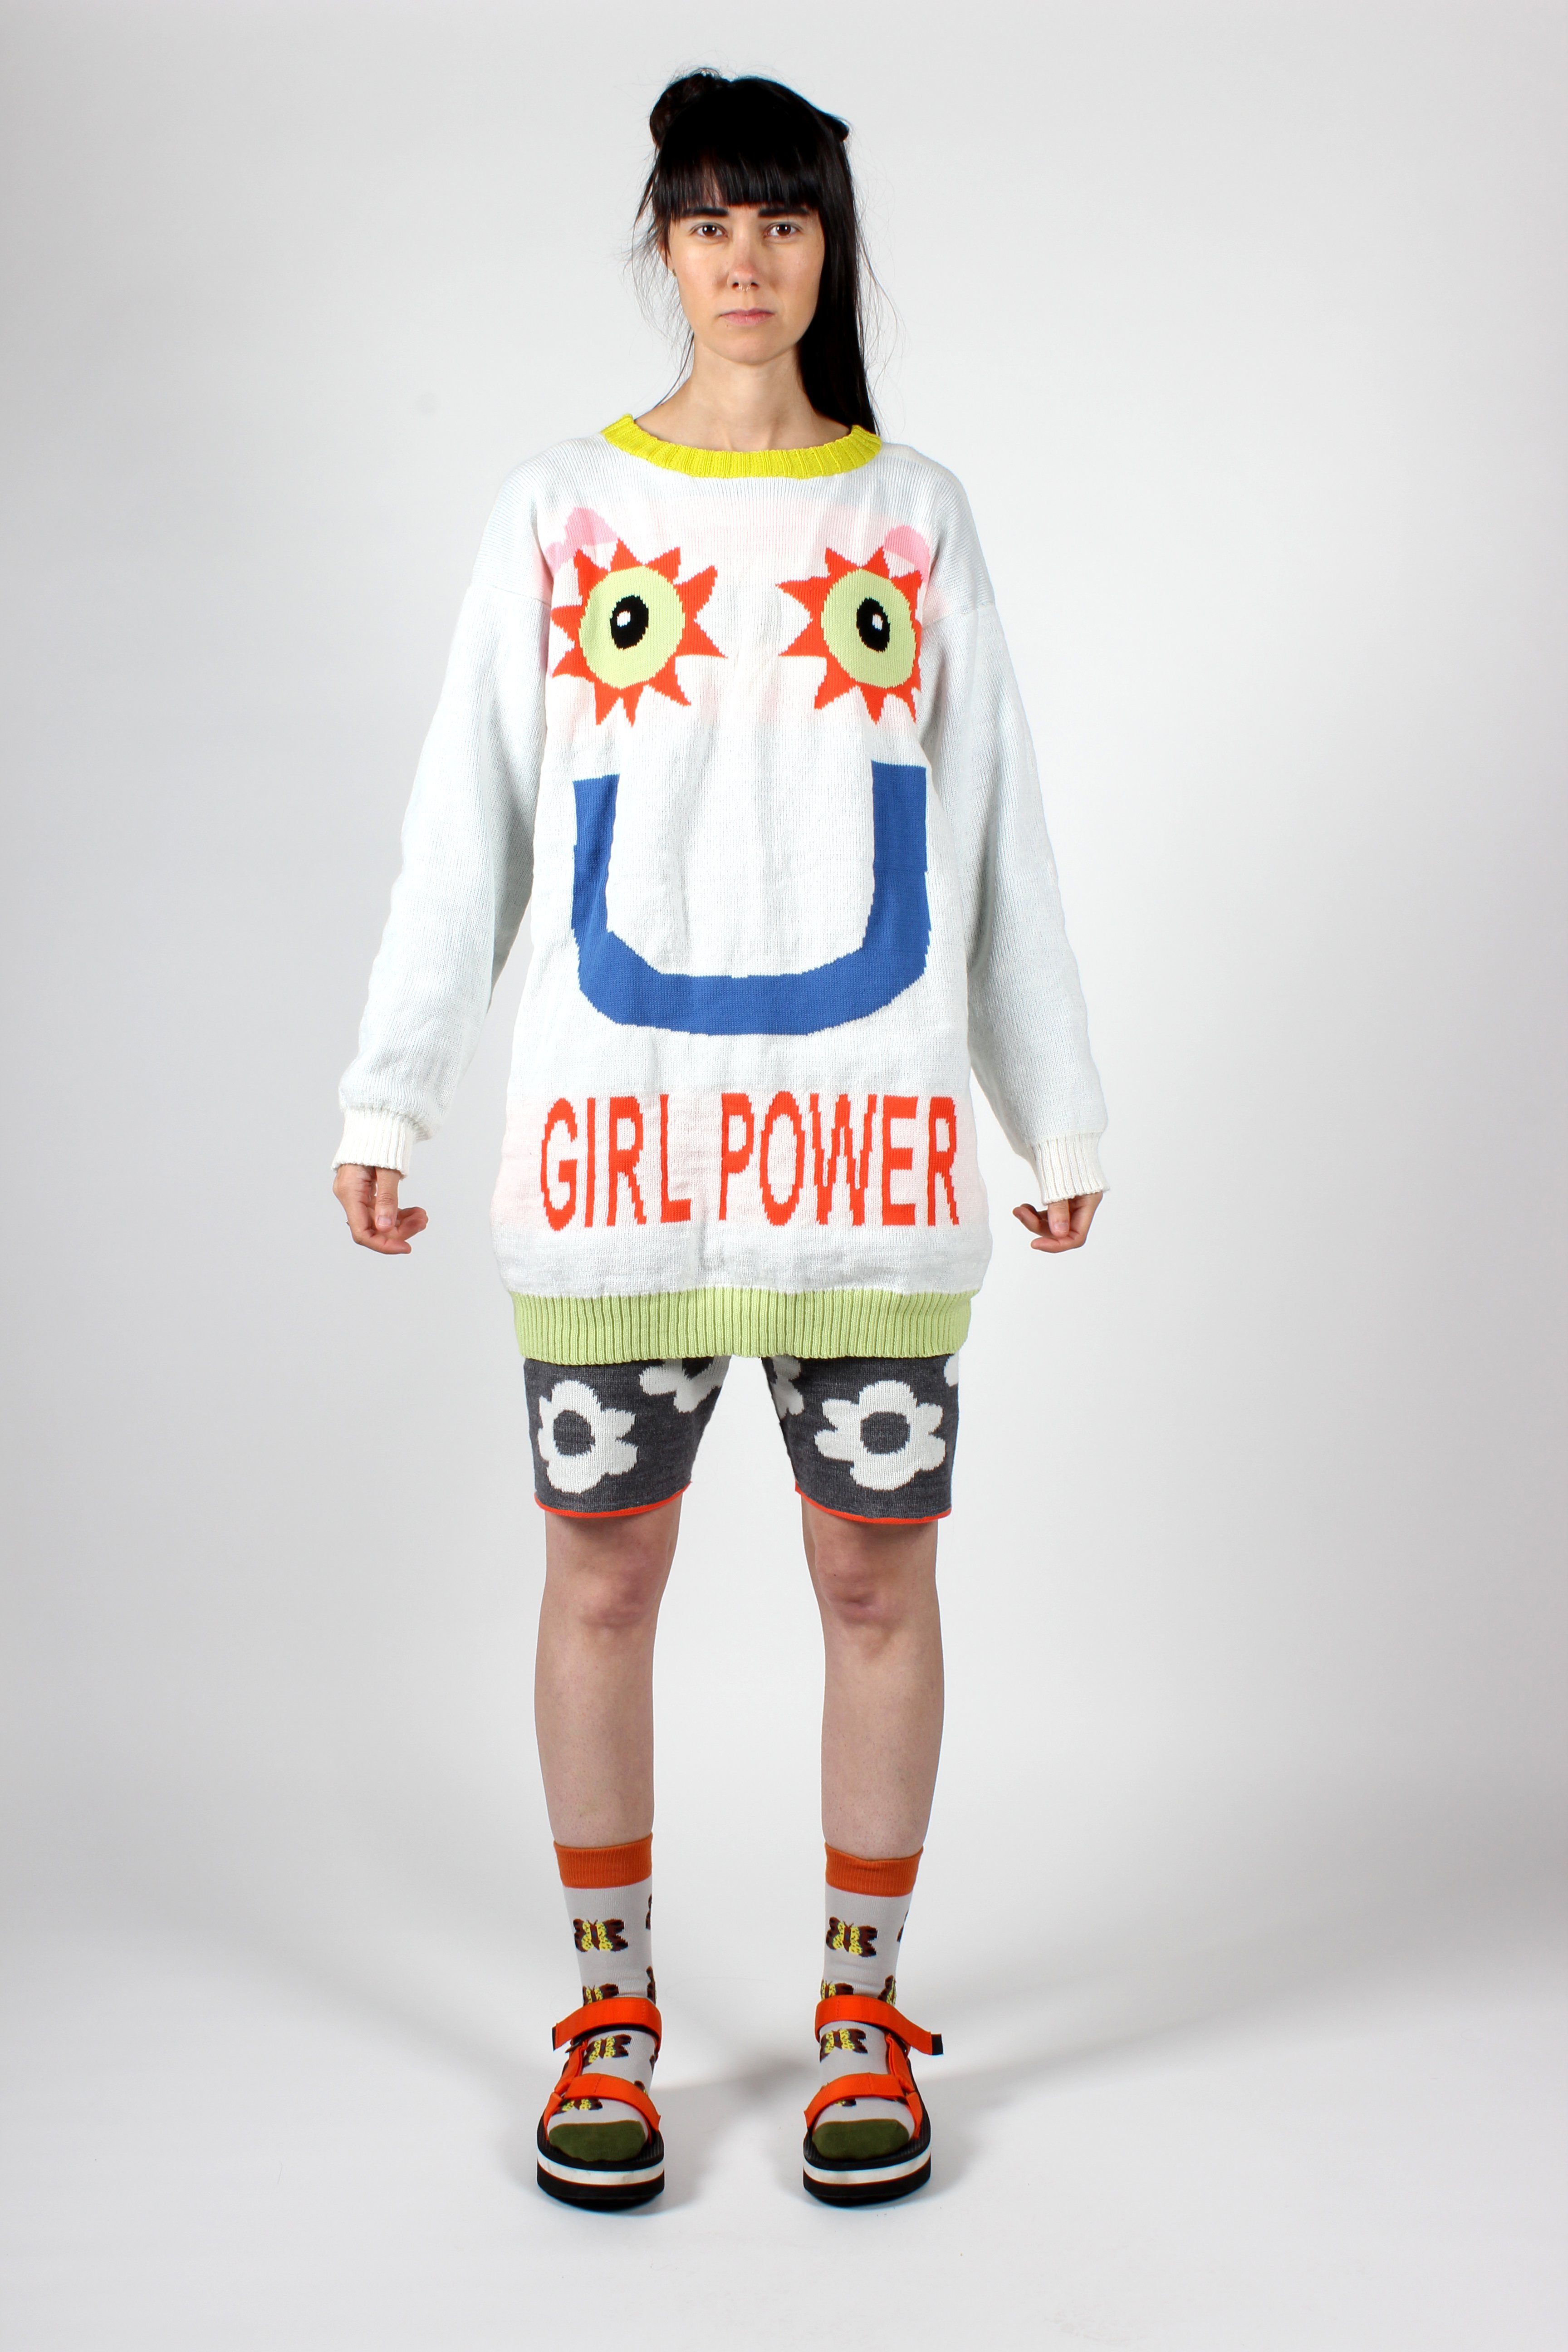 GIRL-POWER_1